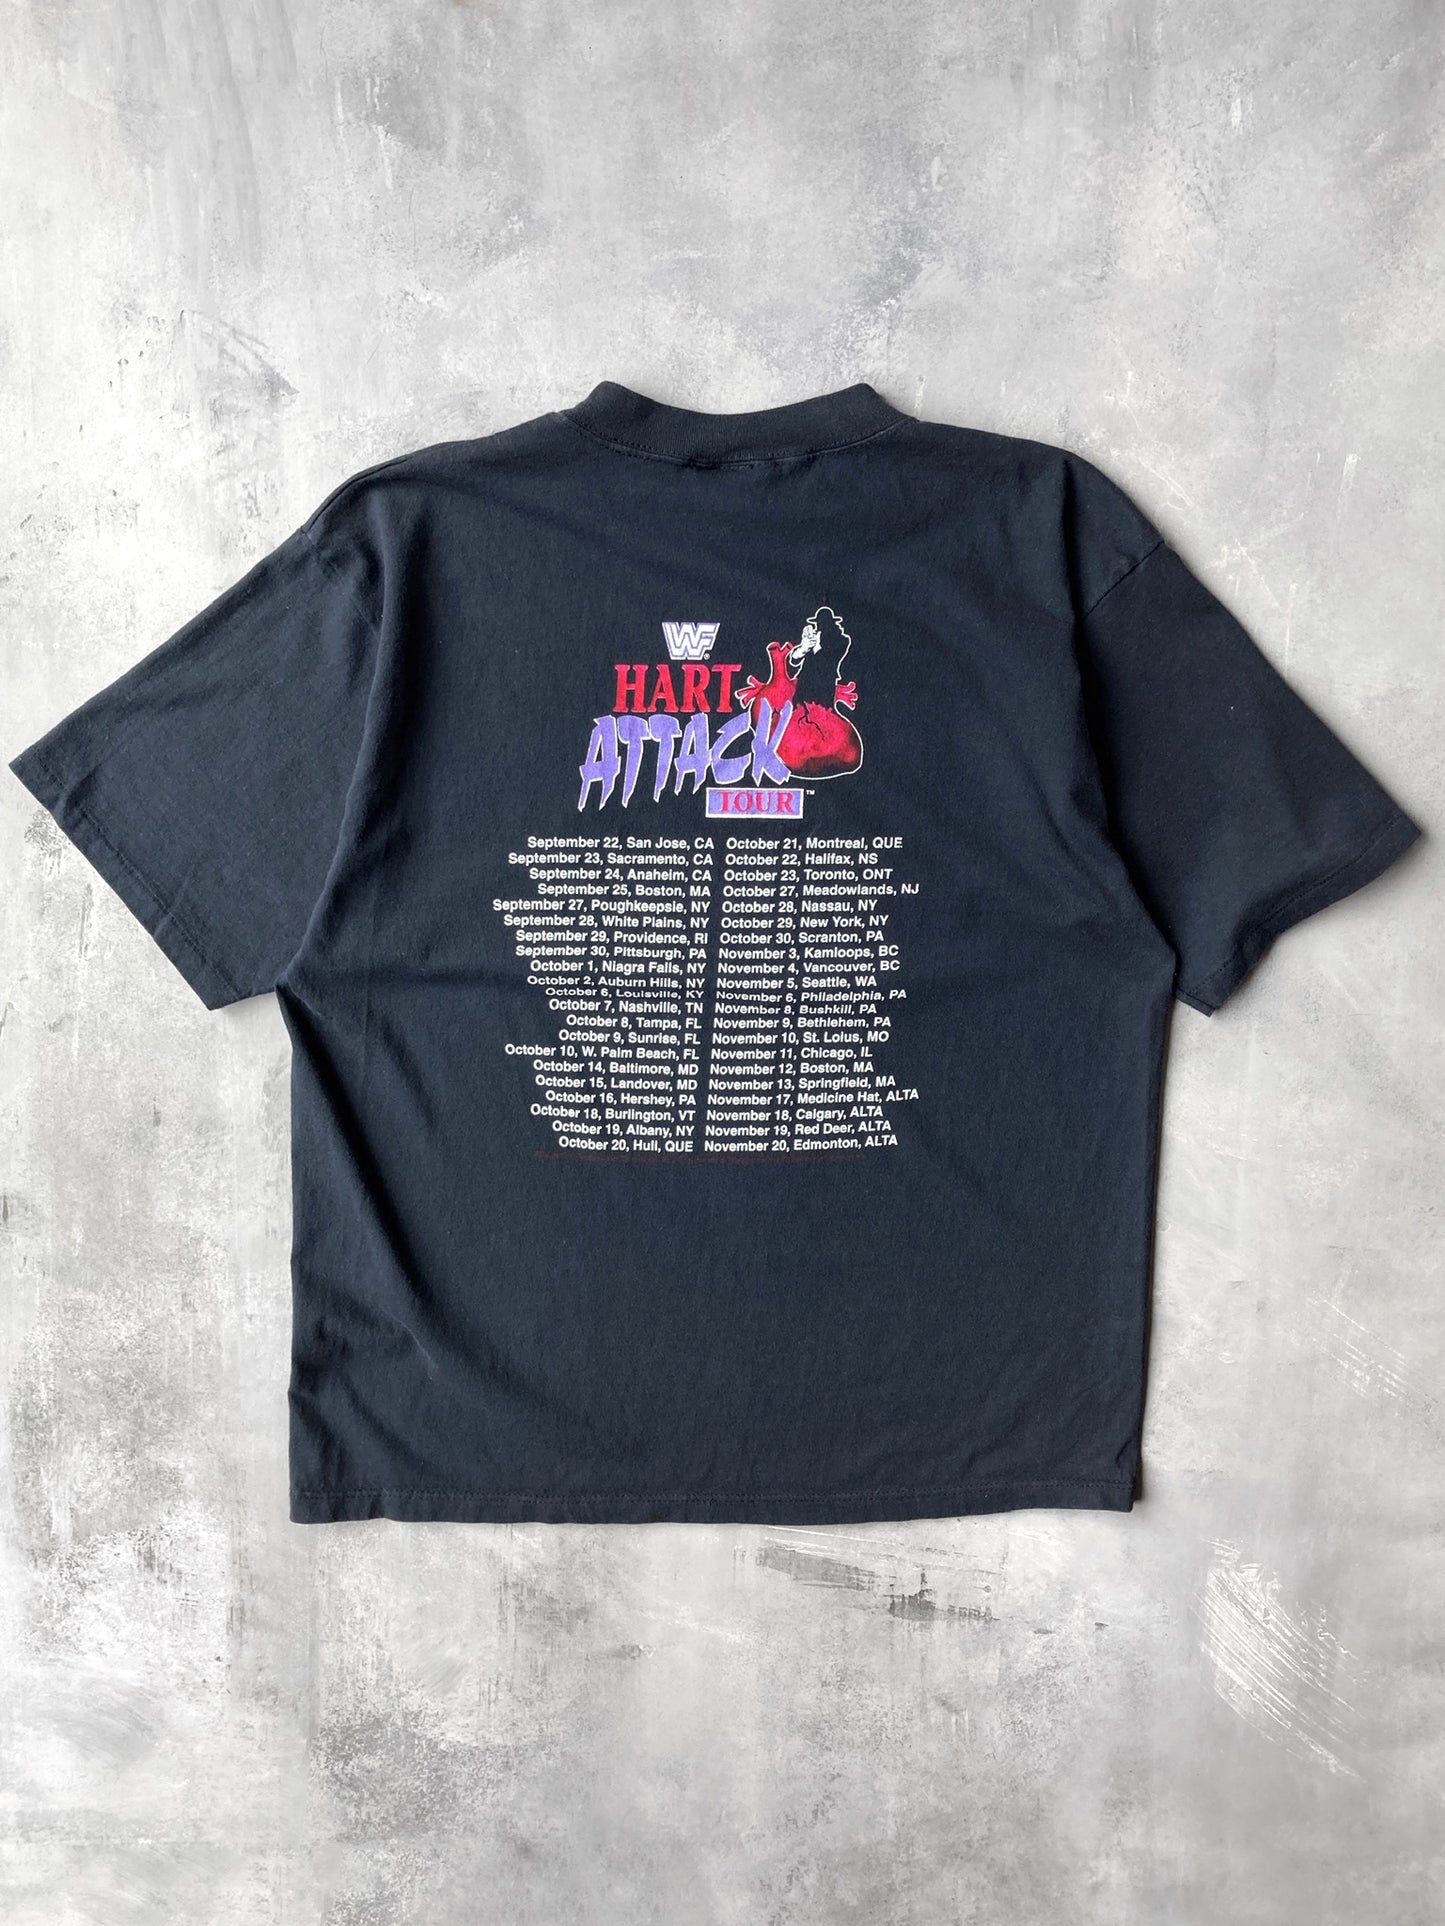 WWF Hart Attack Tour T-Shirt '94 - XL